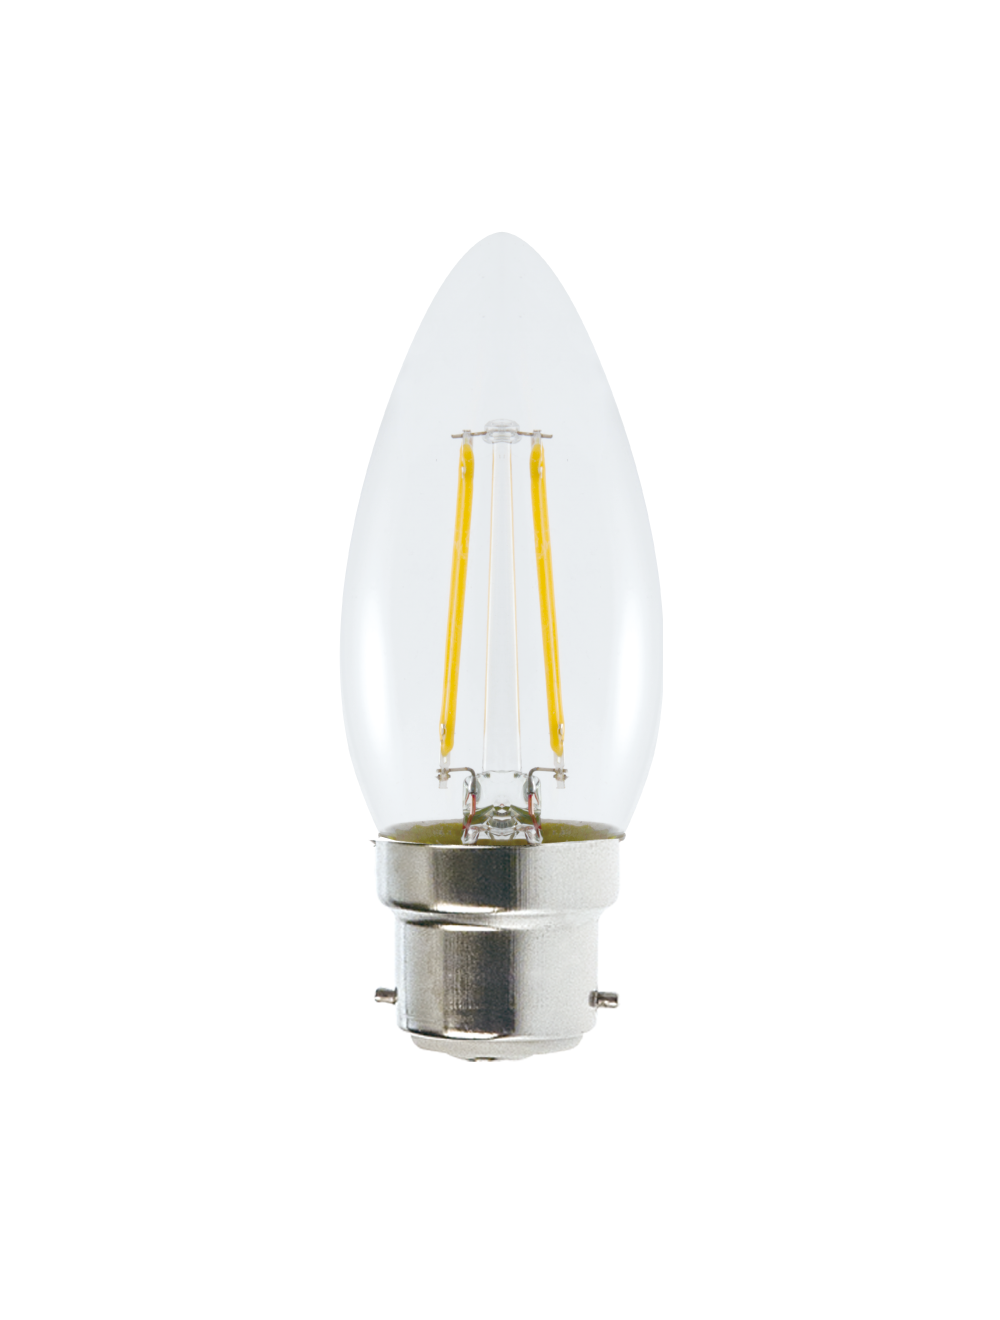 Ampoule LED Sphérique Aluminium / Pc B22 Baïonnette 7W 630Lm 30.000H -  RAI65936 Raito